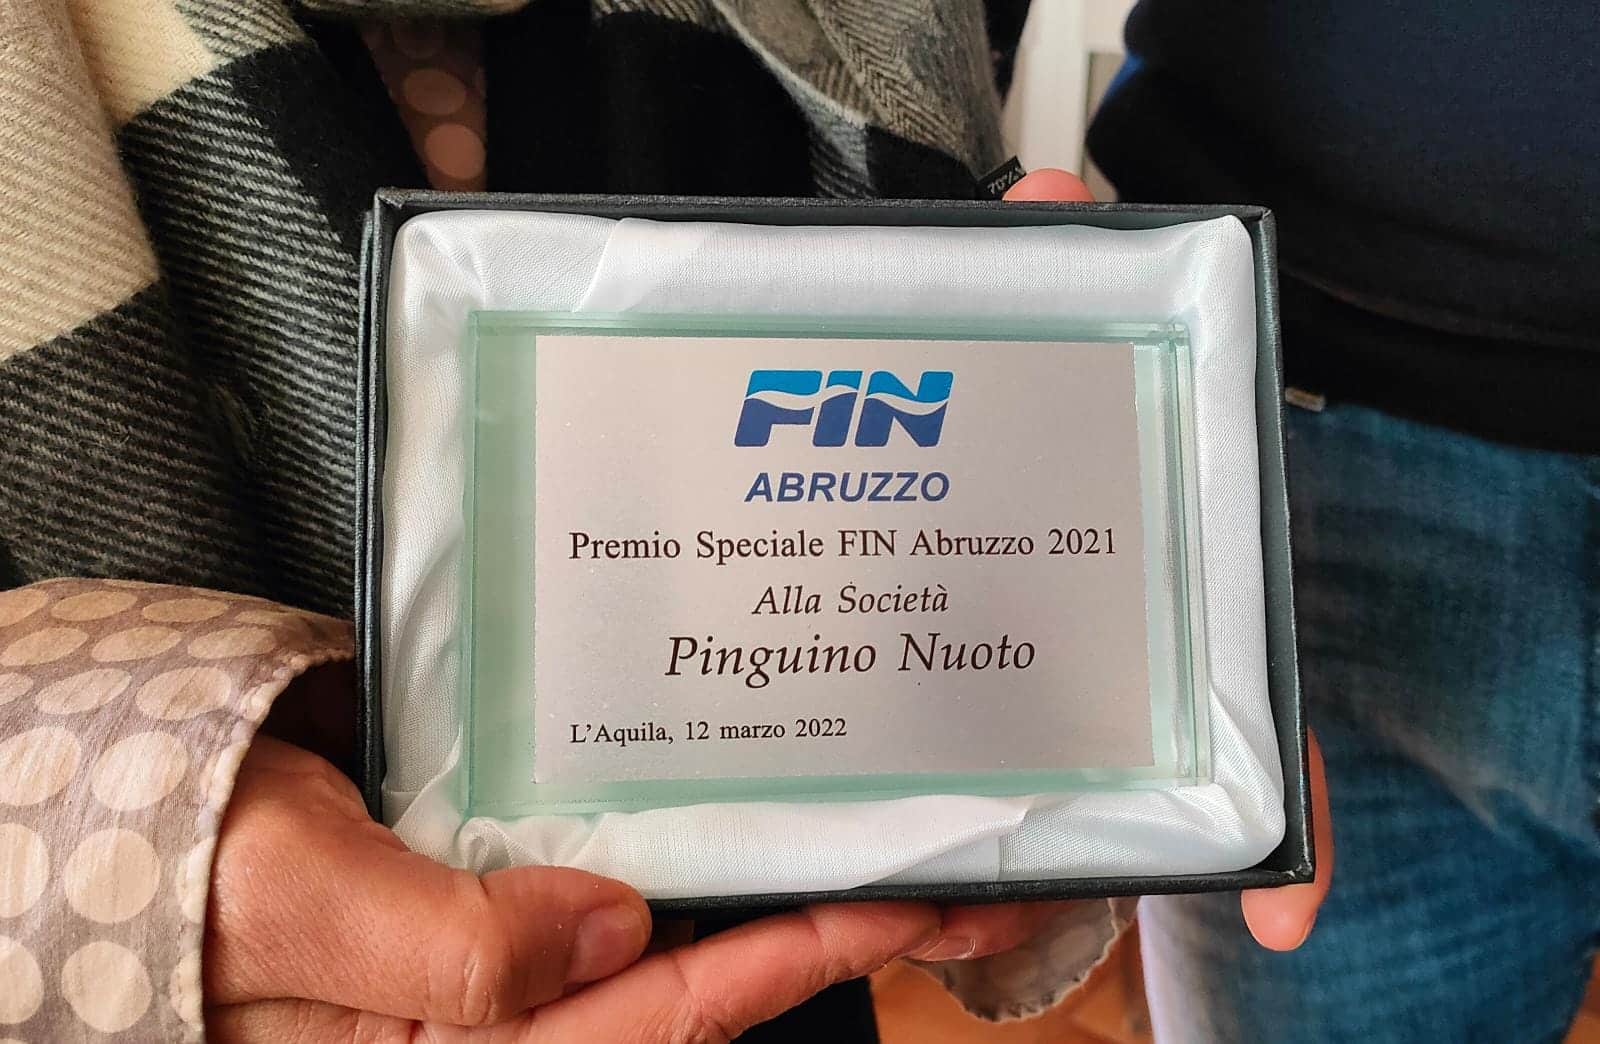 La Pinguino riceve il premio dalla Fin Abruzzo per aver ospitato le gare nel periodo di pandemia